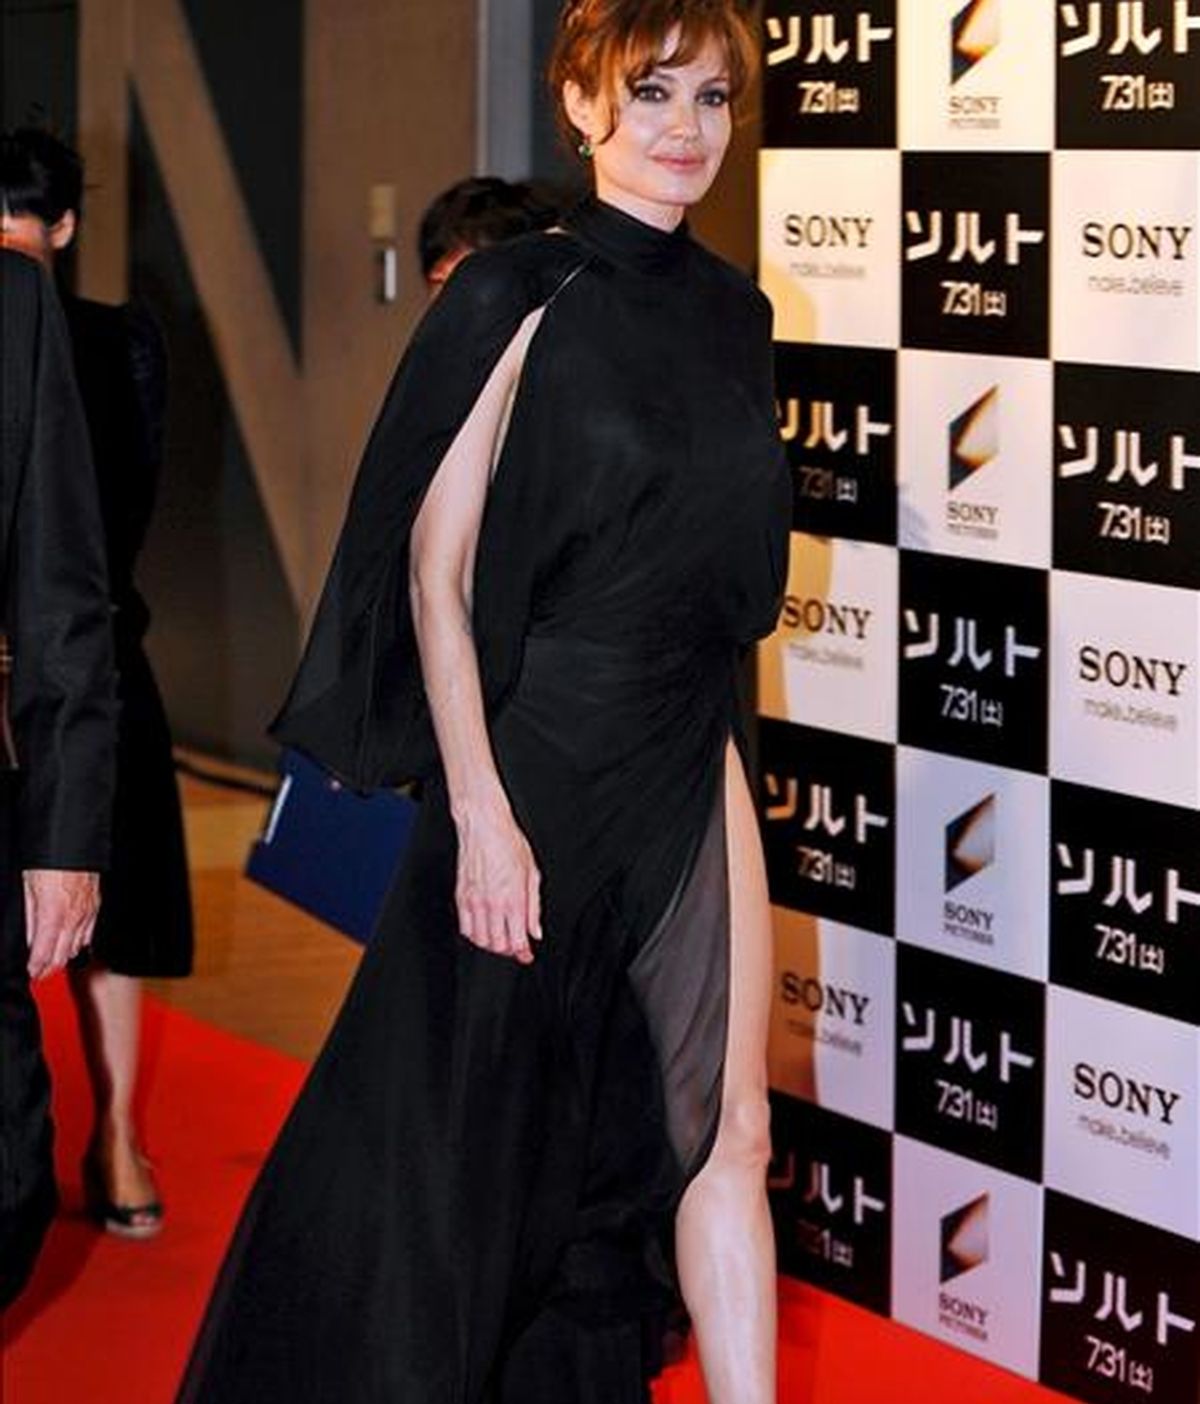 La actriz estadounidense Angelina Jolie a su llegada hoy a la presentación de su última película "Salt" en Tokio (Japón). La cinta dirigida por el australiano Phillip Noyce llega a las pantallas japonesas el 31 de julio. EFE